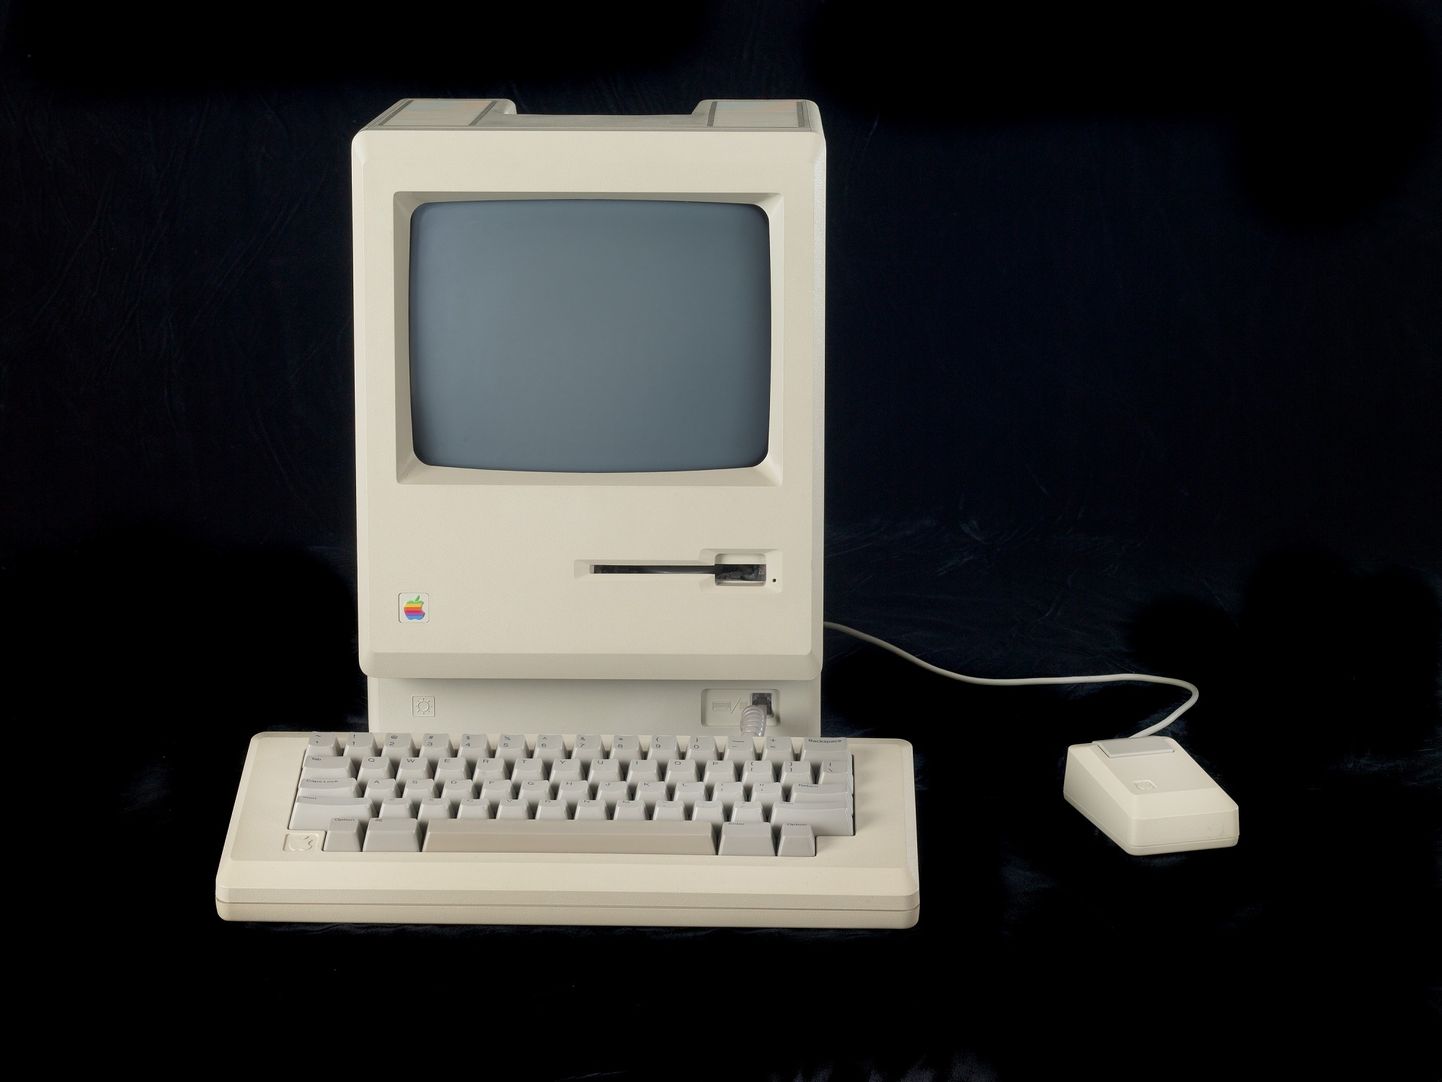 Apple´i üks asutajatest ja juht Steve Jobs esitles 1984. aastal uut arvutit Macintosh kui võimalust igaühel arvutit kasutama hakata, kuna see on lihtne, odav ja mugav. Hind oli sel masinal 2500 dollarit, mis siiski polnud veel väga taskukohane.